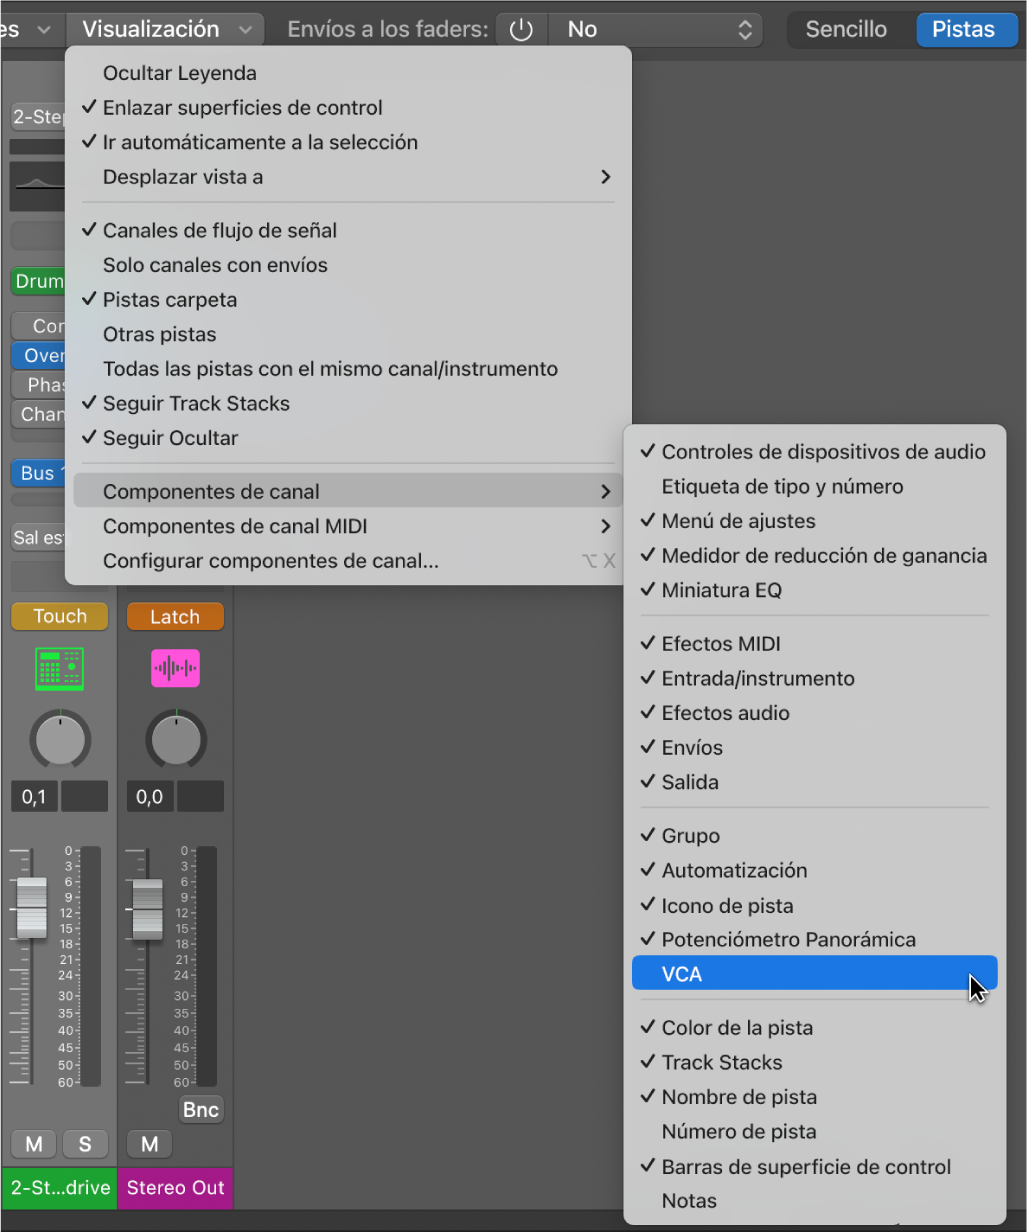 Ilustración. Submenú “Componentes de canal” del menú Visualización del mezclador.